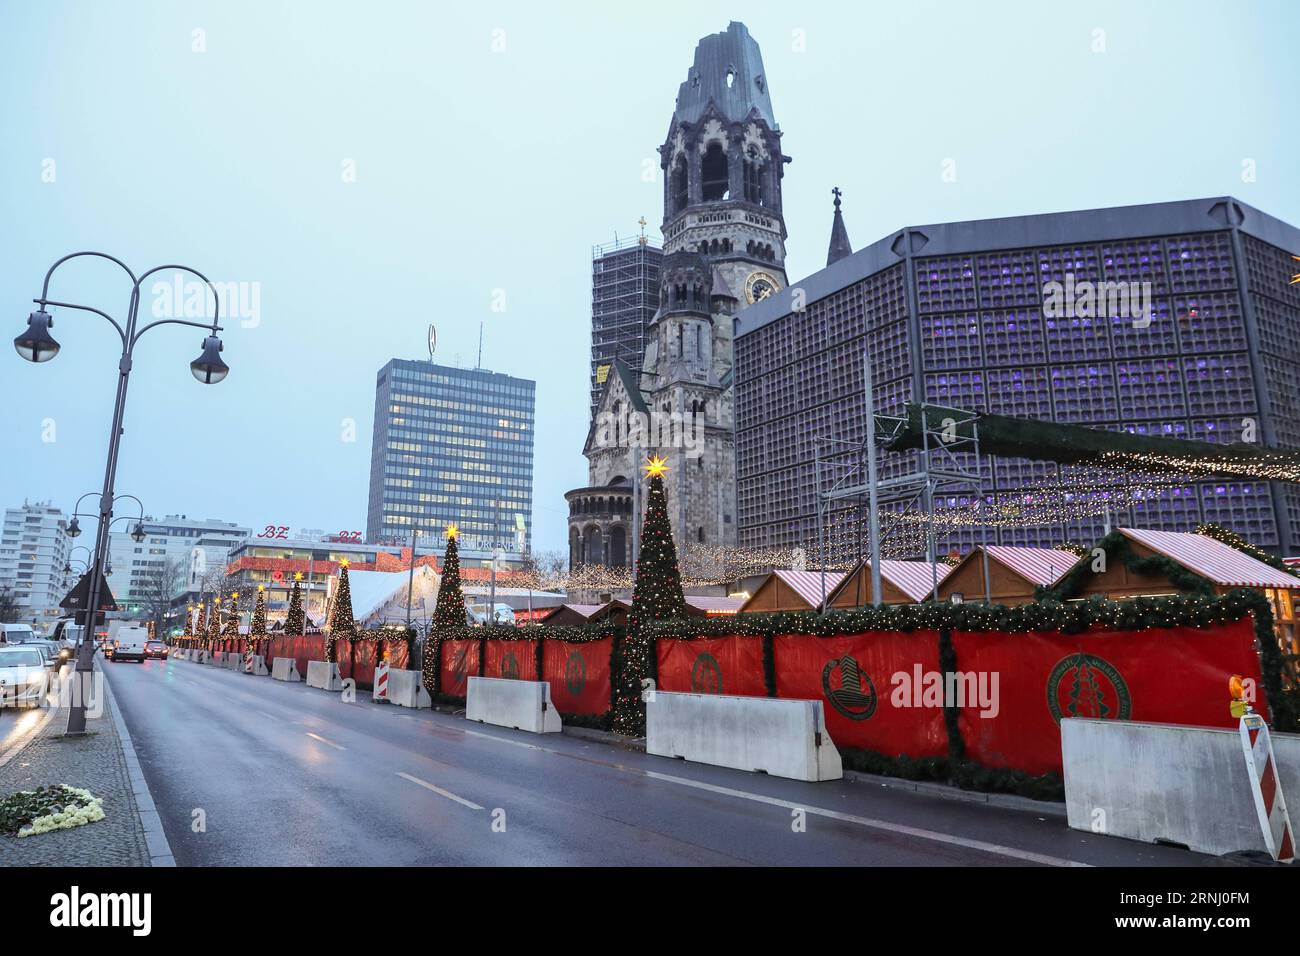 Anschlag in Berlin - Nizzasperren am Breitscheidplatz (161222) -- BERLIN, 22. Dezember 2016 -- Zementbarrieren werden von der Polizei um den wiedereröffneten Weihnachtsmarkt am Breitscheid-Platz in Berlin, Hauptstadt, am 22. Dezember 2016 errichtet. Der Weihnachtsmarkt hier wurde am Montag angegriffen und am Donnerstag wieder eröffnet. ) (gl) DEUTSCHLAND-BERLIN-ANGEGRIFFENER WEIHNACHTSMARKT-WIEDERERÖFFNUNG ShanxYuqi PUBLICATIONxNOTxINxCHN Halt in Berlin bei Verwaltungen Berlin DEZ 22 2016 Zementbarrieren werden von der Polizei AM 22. DEZ 2016 um den wiedereröffneten Weihnachtsmarkt AM Breitscheid-Platz in der Berliner Hauptstadt platziert Stockfoto